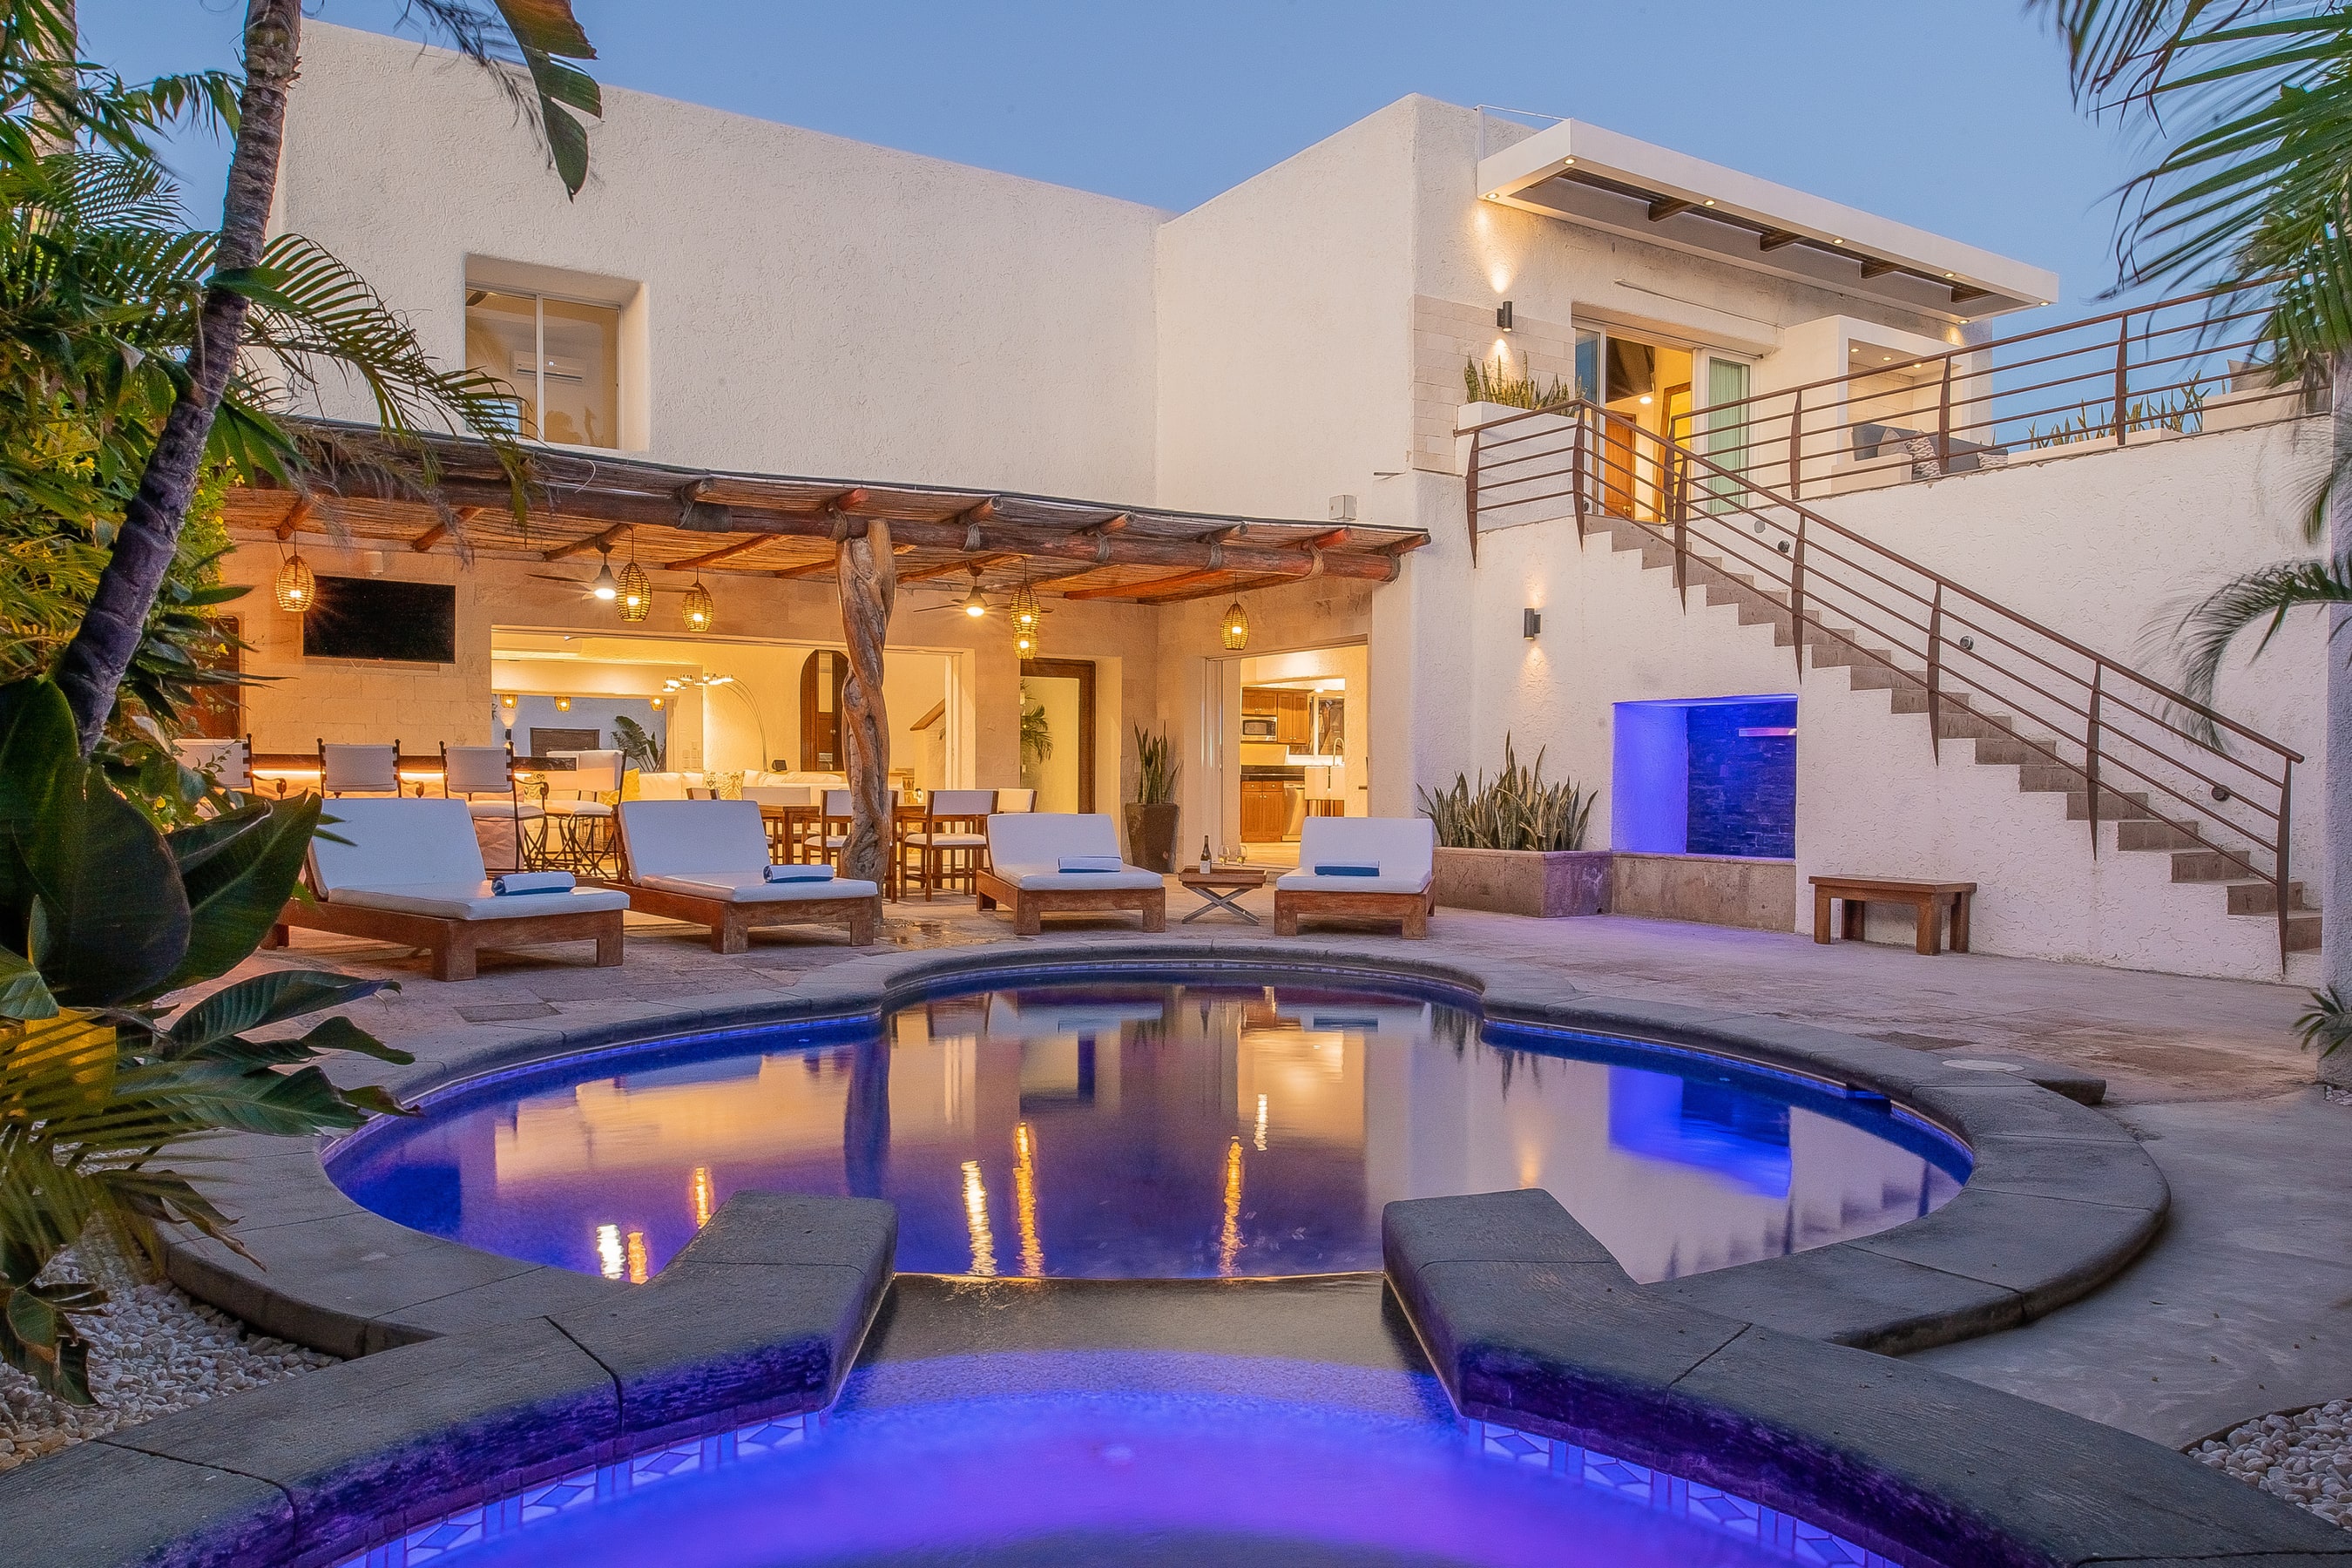 Cabo San Lucas, México – "Villa Luna Nueva" es la propiedad de bono de este año. La asombrosa casa cuenta con una zona exterior tropical, un amplio patio, una piscina privada y una terraza aislada con jardín.